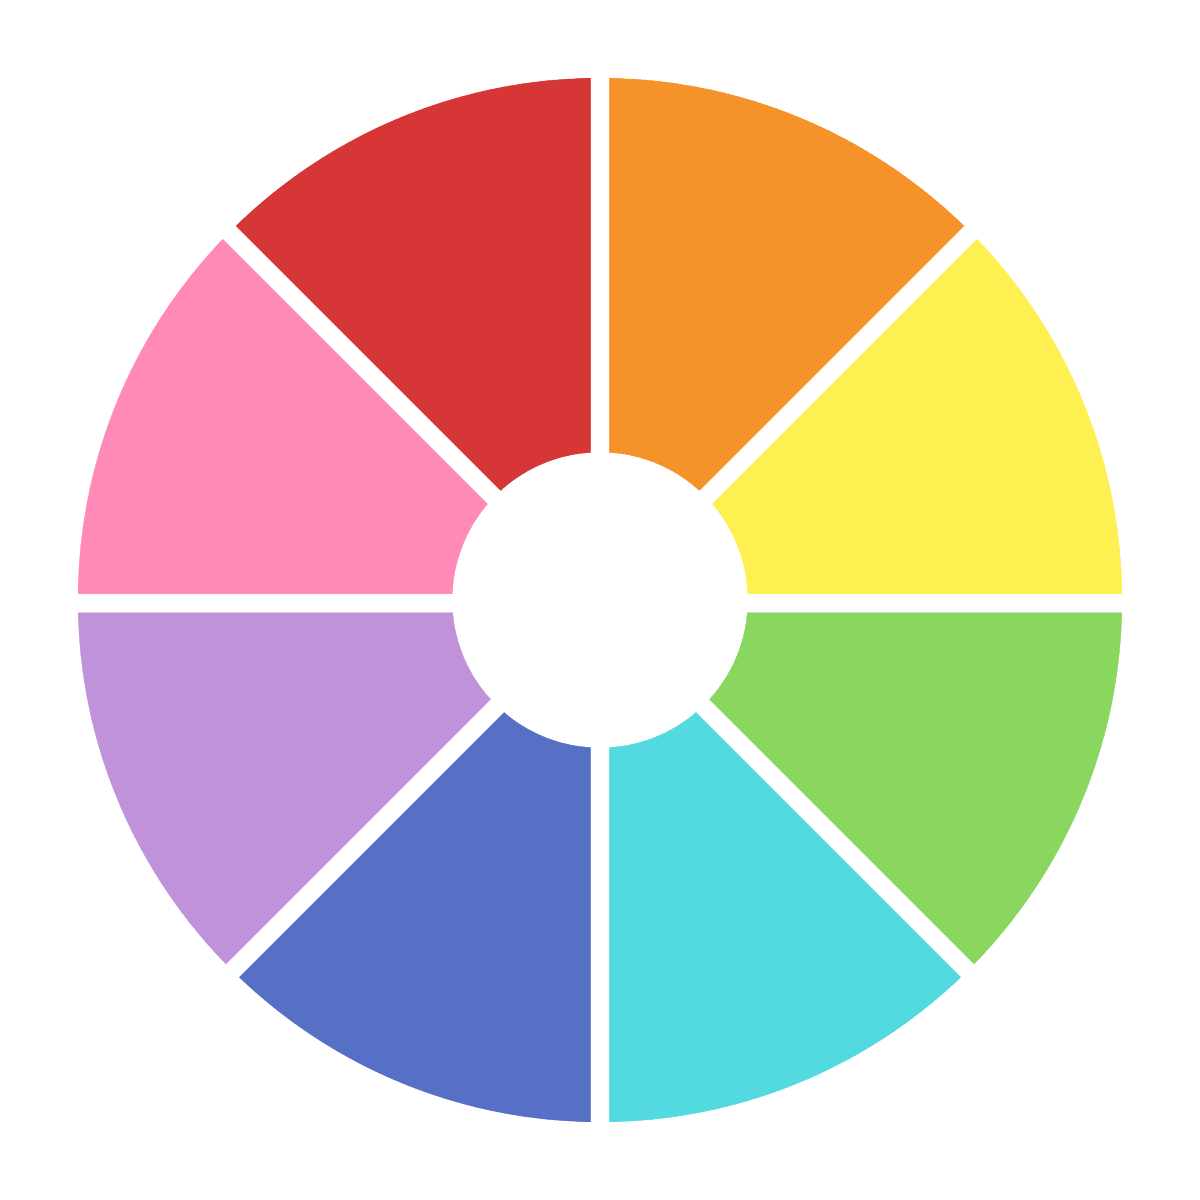 「近頃流行りの色相環チャレンジのテンプレ作ってみた。各色に対応したキャラクターを描」|Moaのイラスト